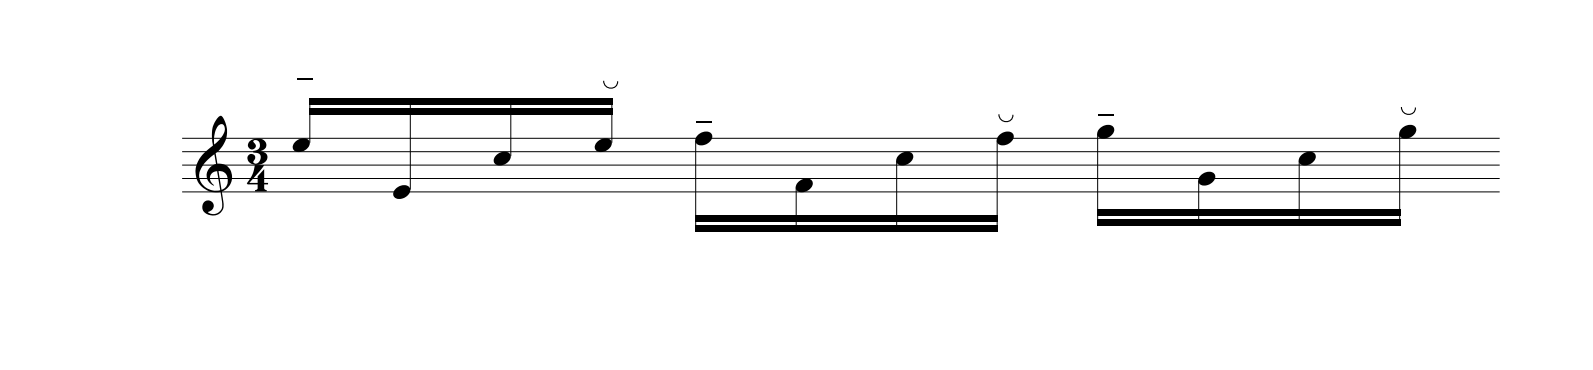 studi di Cramer accentuati da Beethoven 